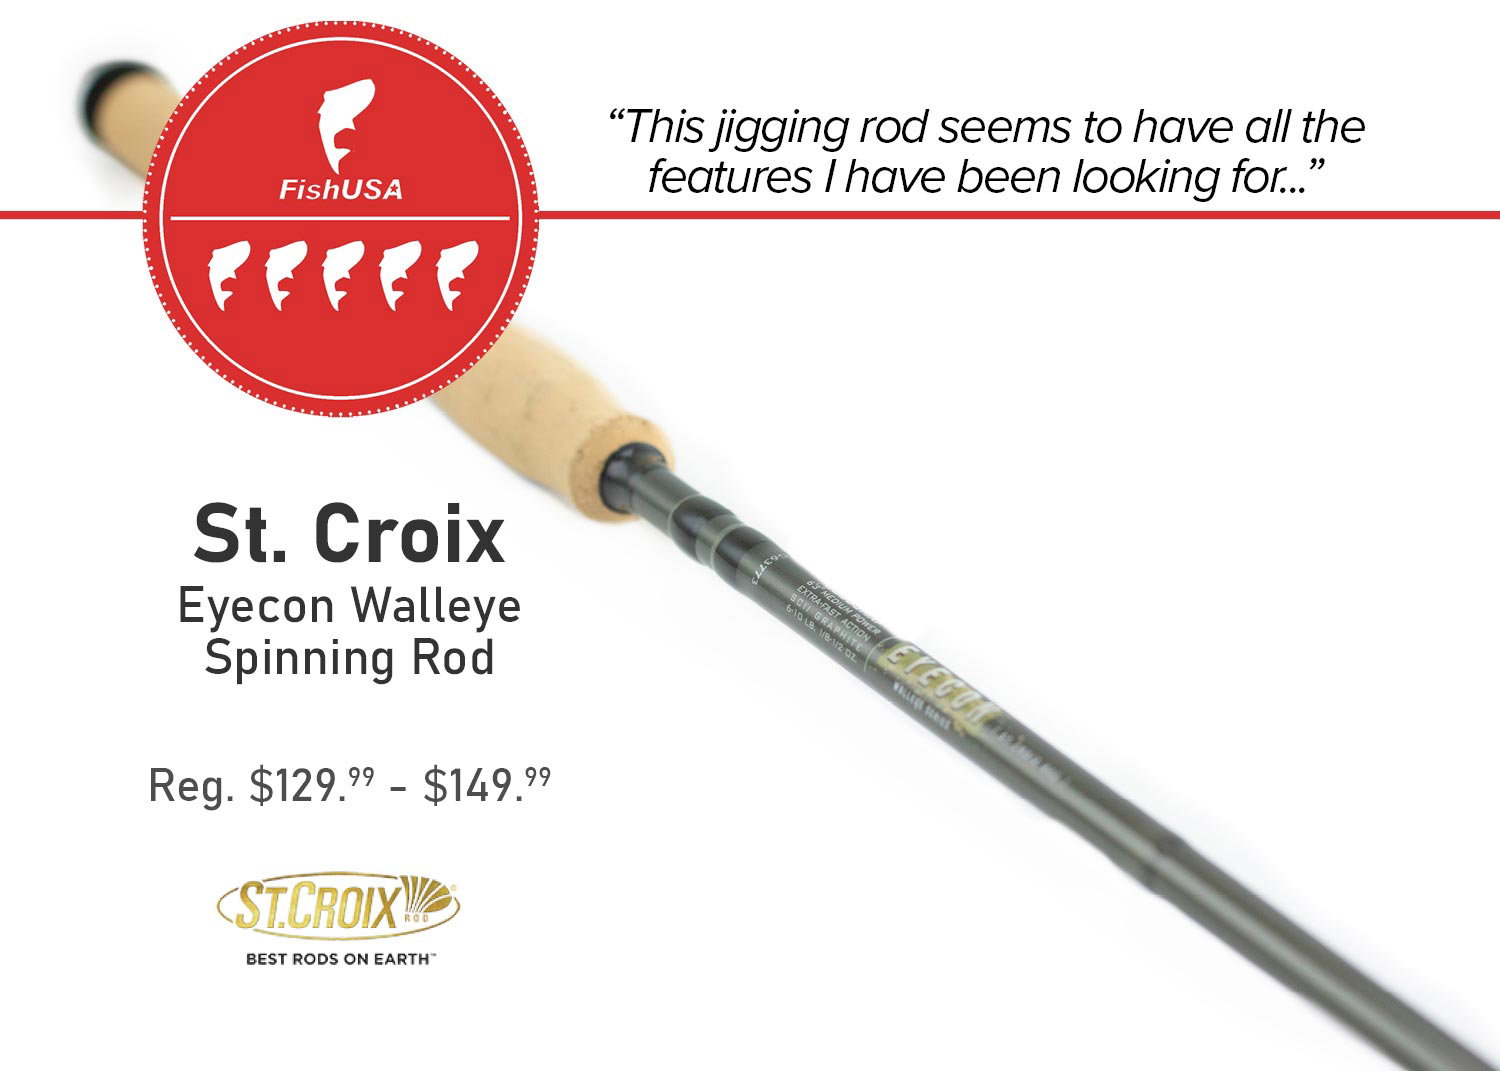 St. Croix Eyecon Walleye Spinning Rod